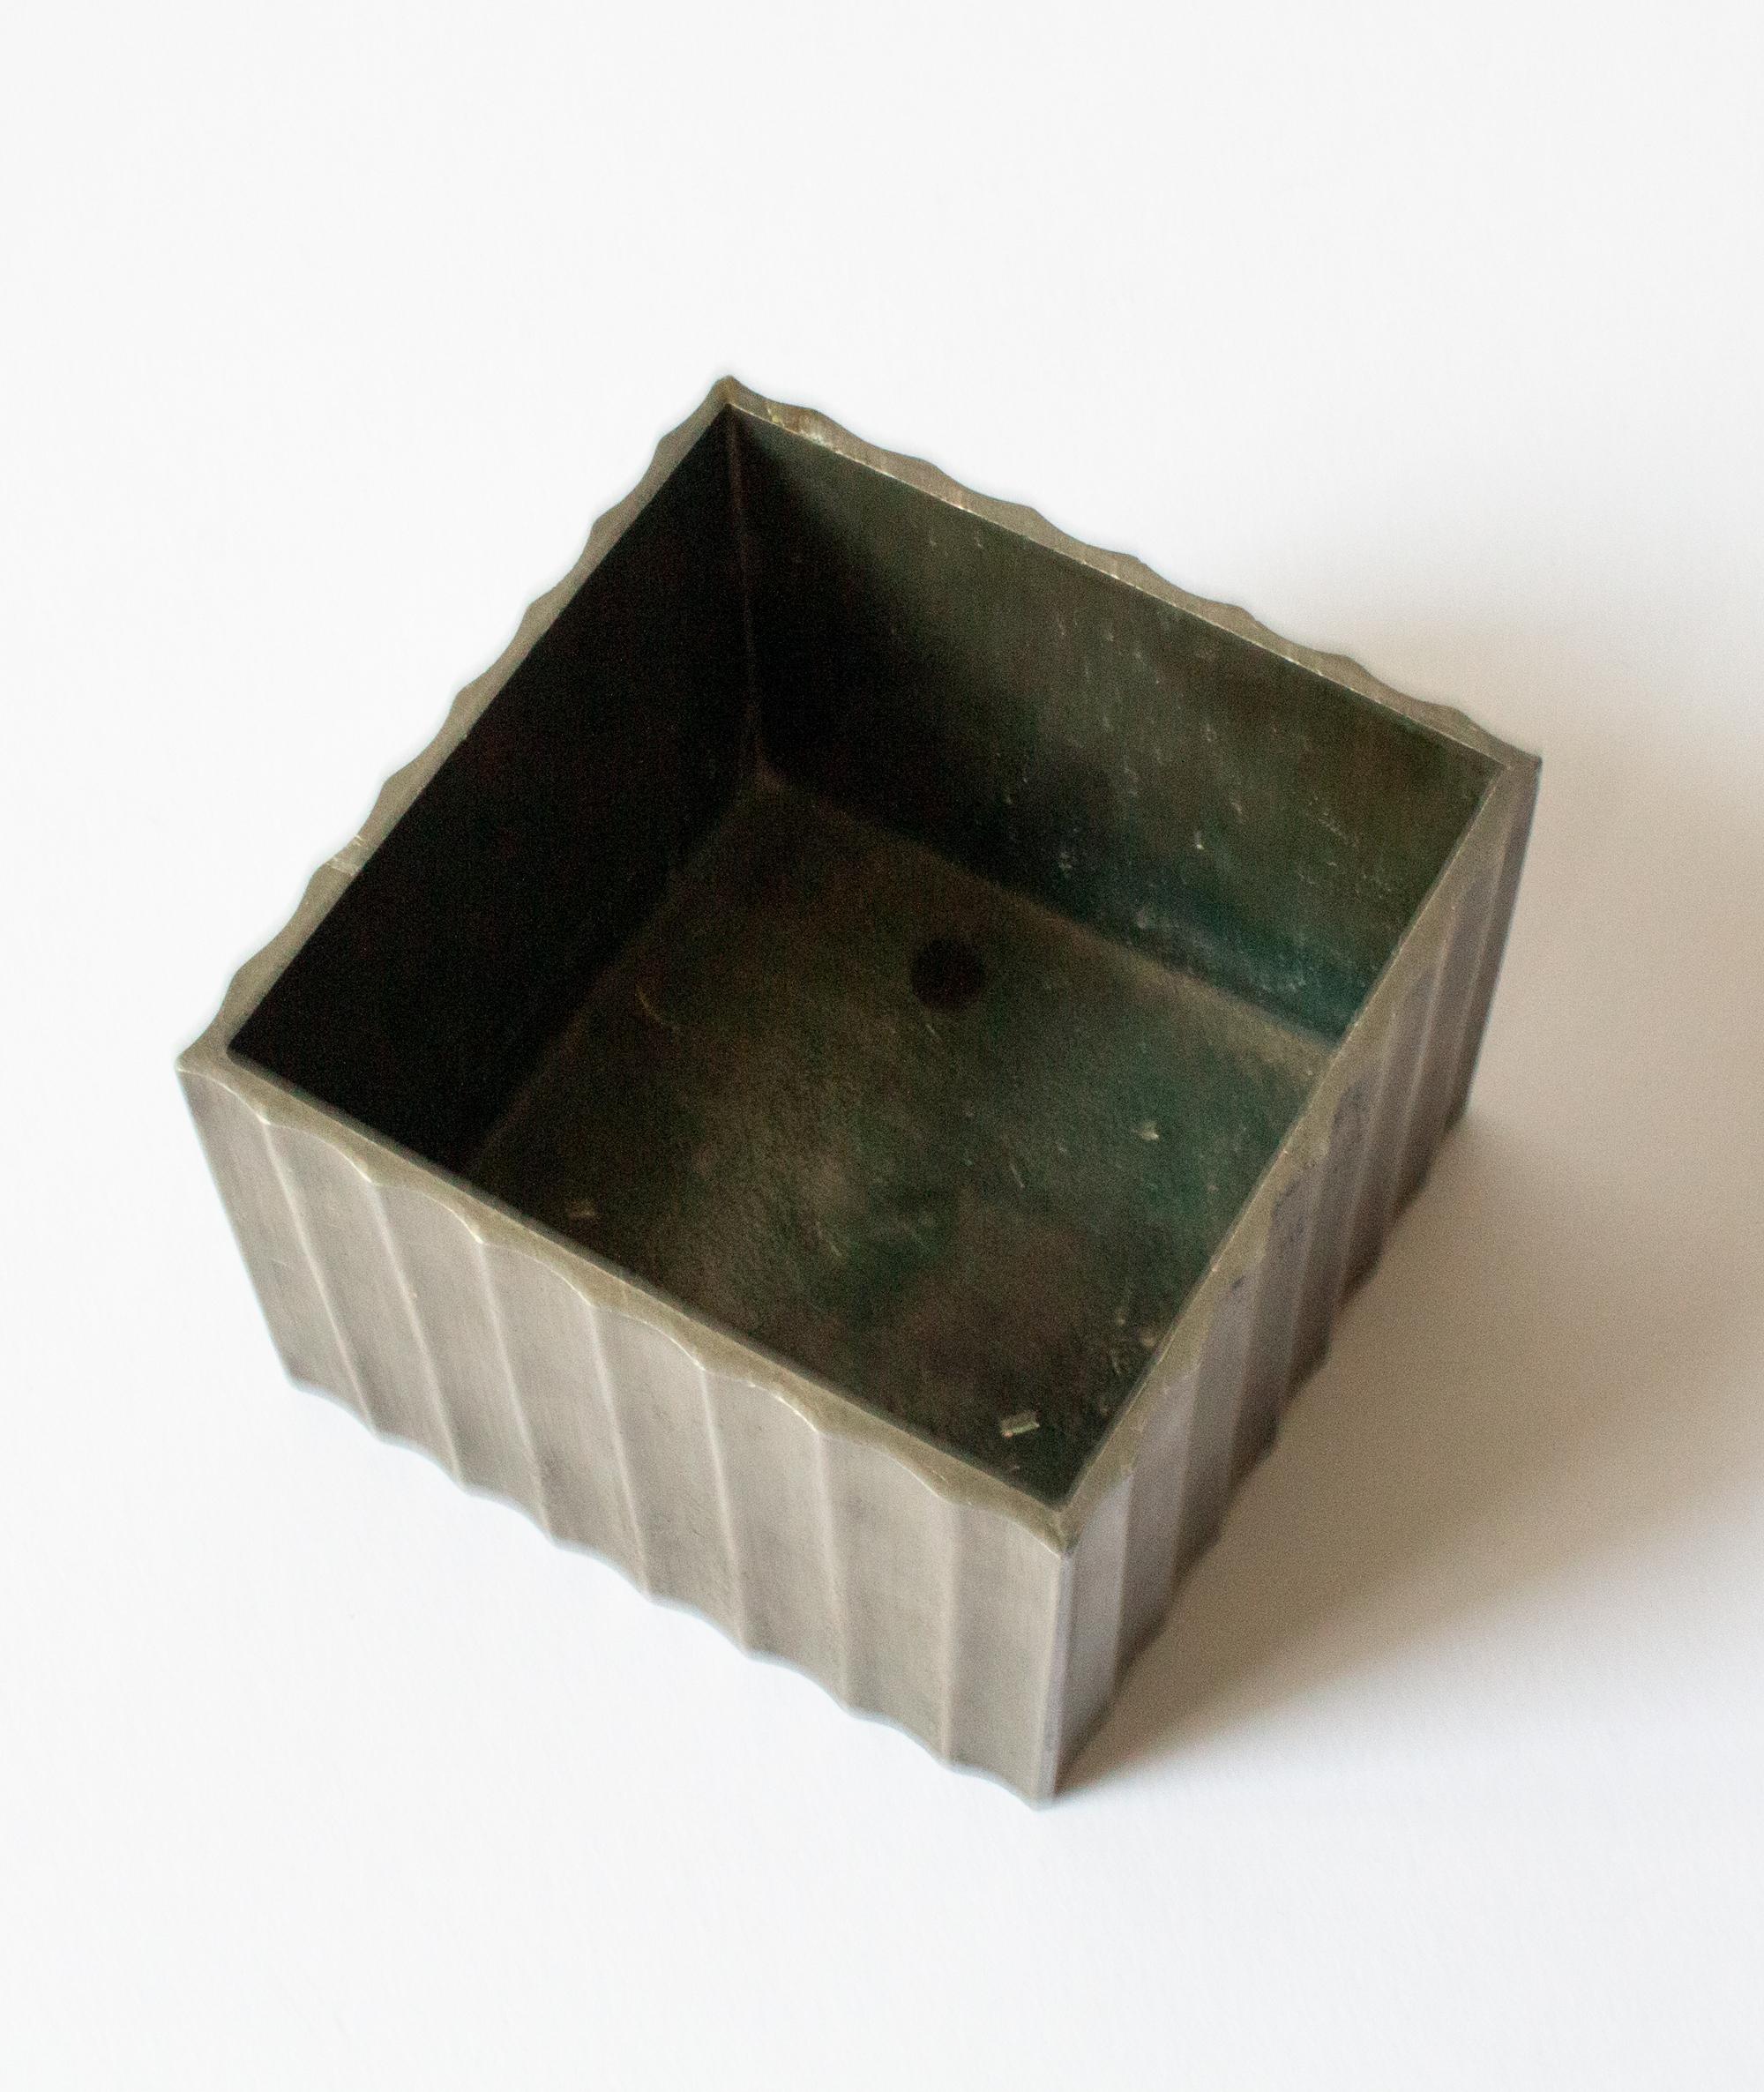 Swedish Grace Pewter Box by Ingvar Bossler for Gamleby Tenn, Västervik, Sweden. For Sale 1